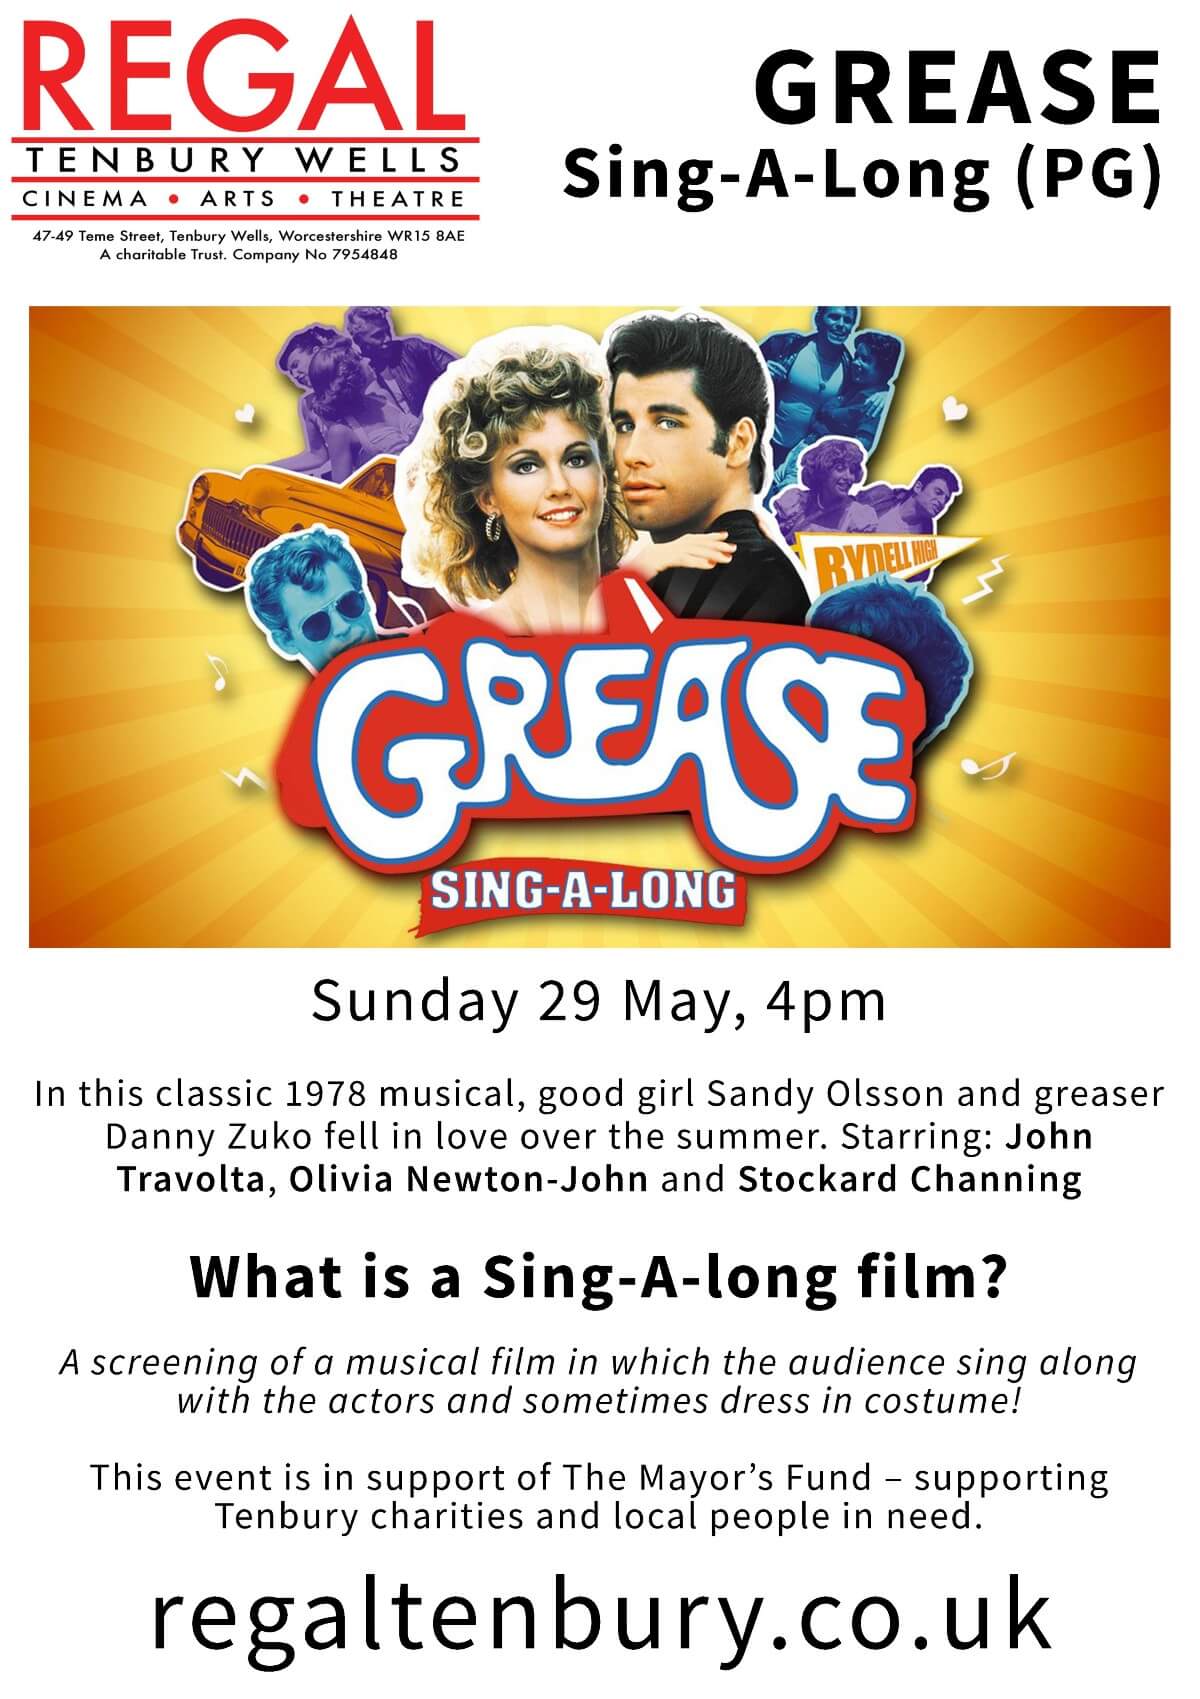 Grease SingAlong at The Regal Tenbury 29 May 2022 Visit The Malverns